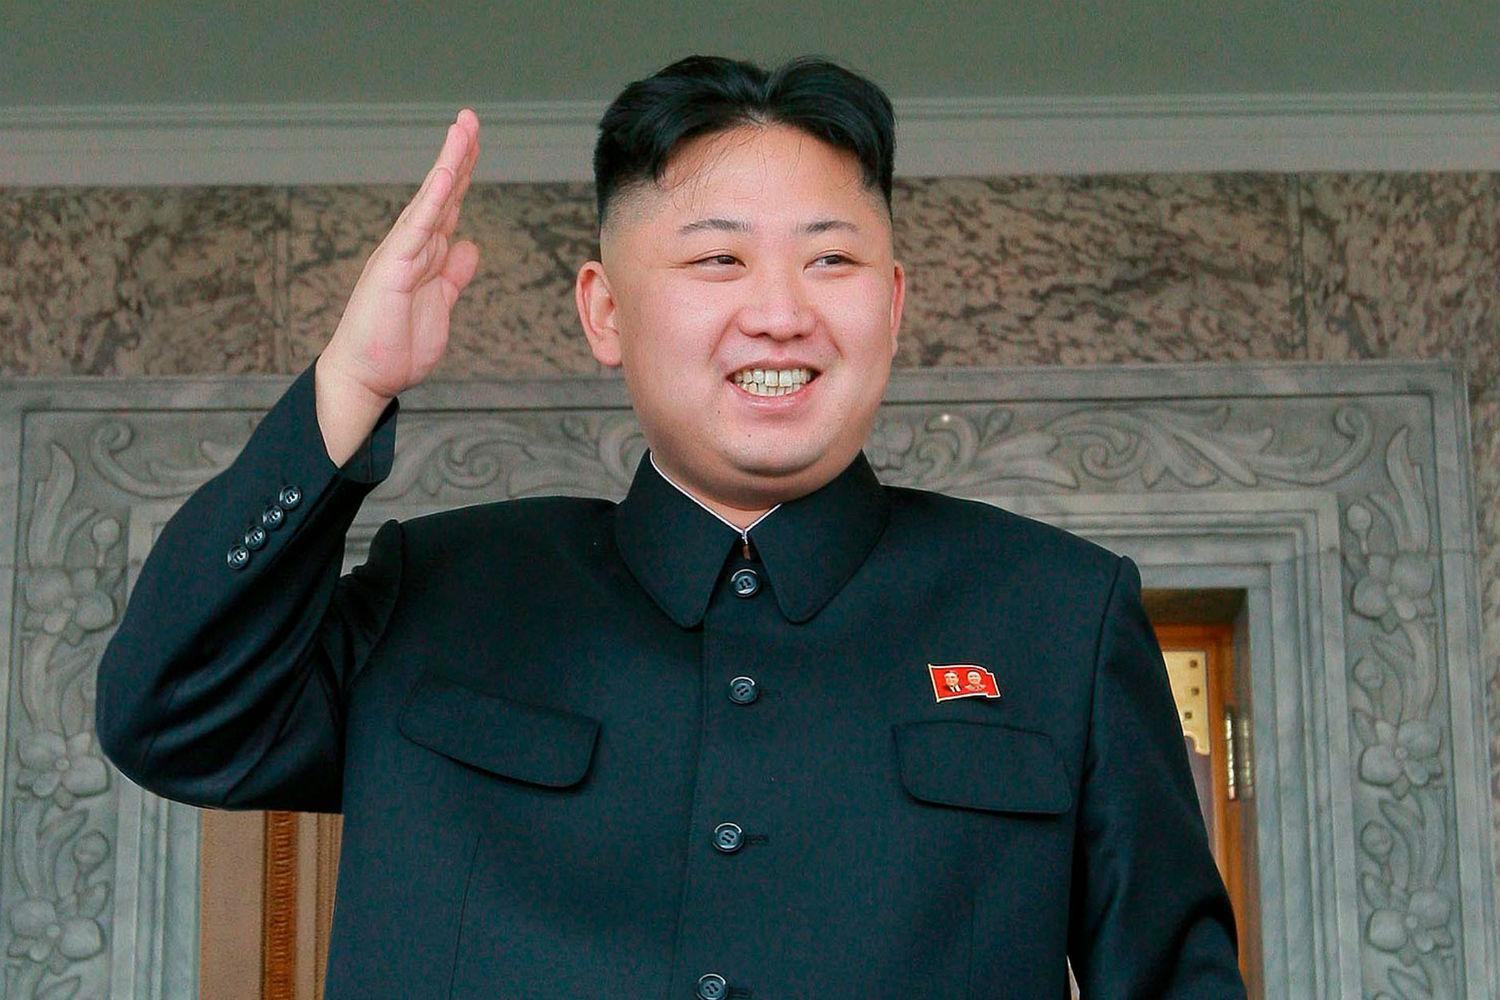 Hiện chưa có xác nhận chính thức Kim Jong-un sẽ đại diện Triều Tiên tới Nga